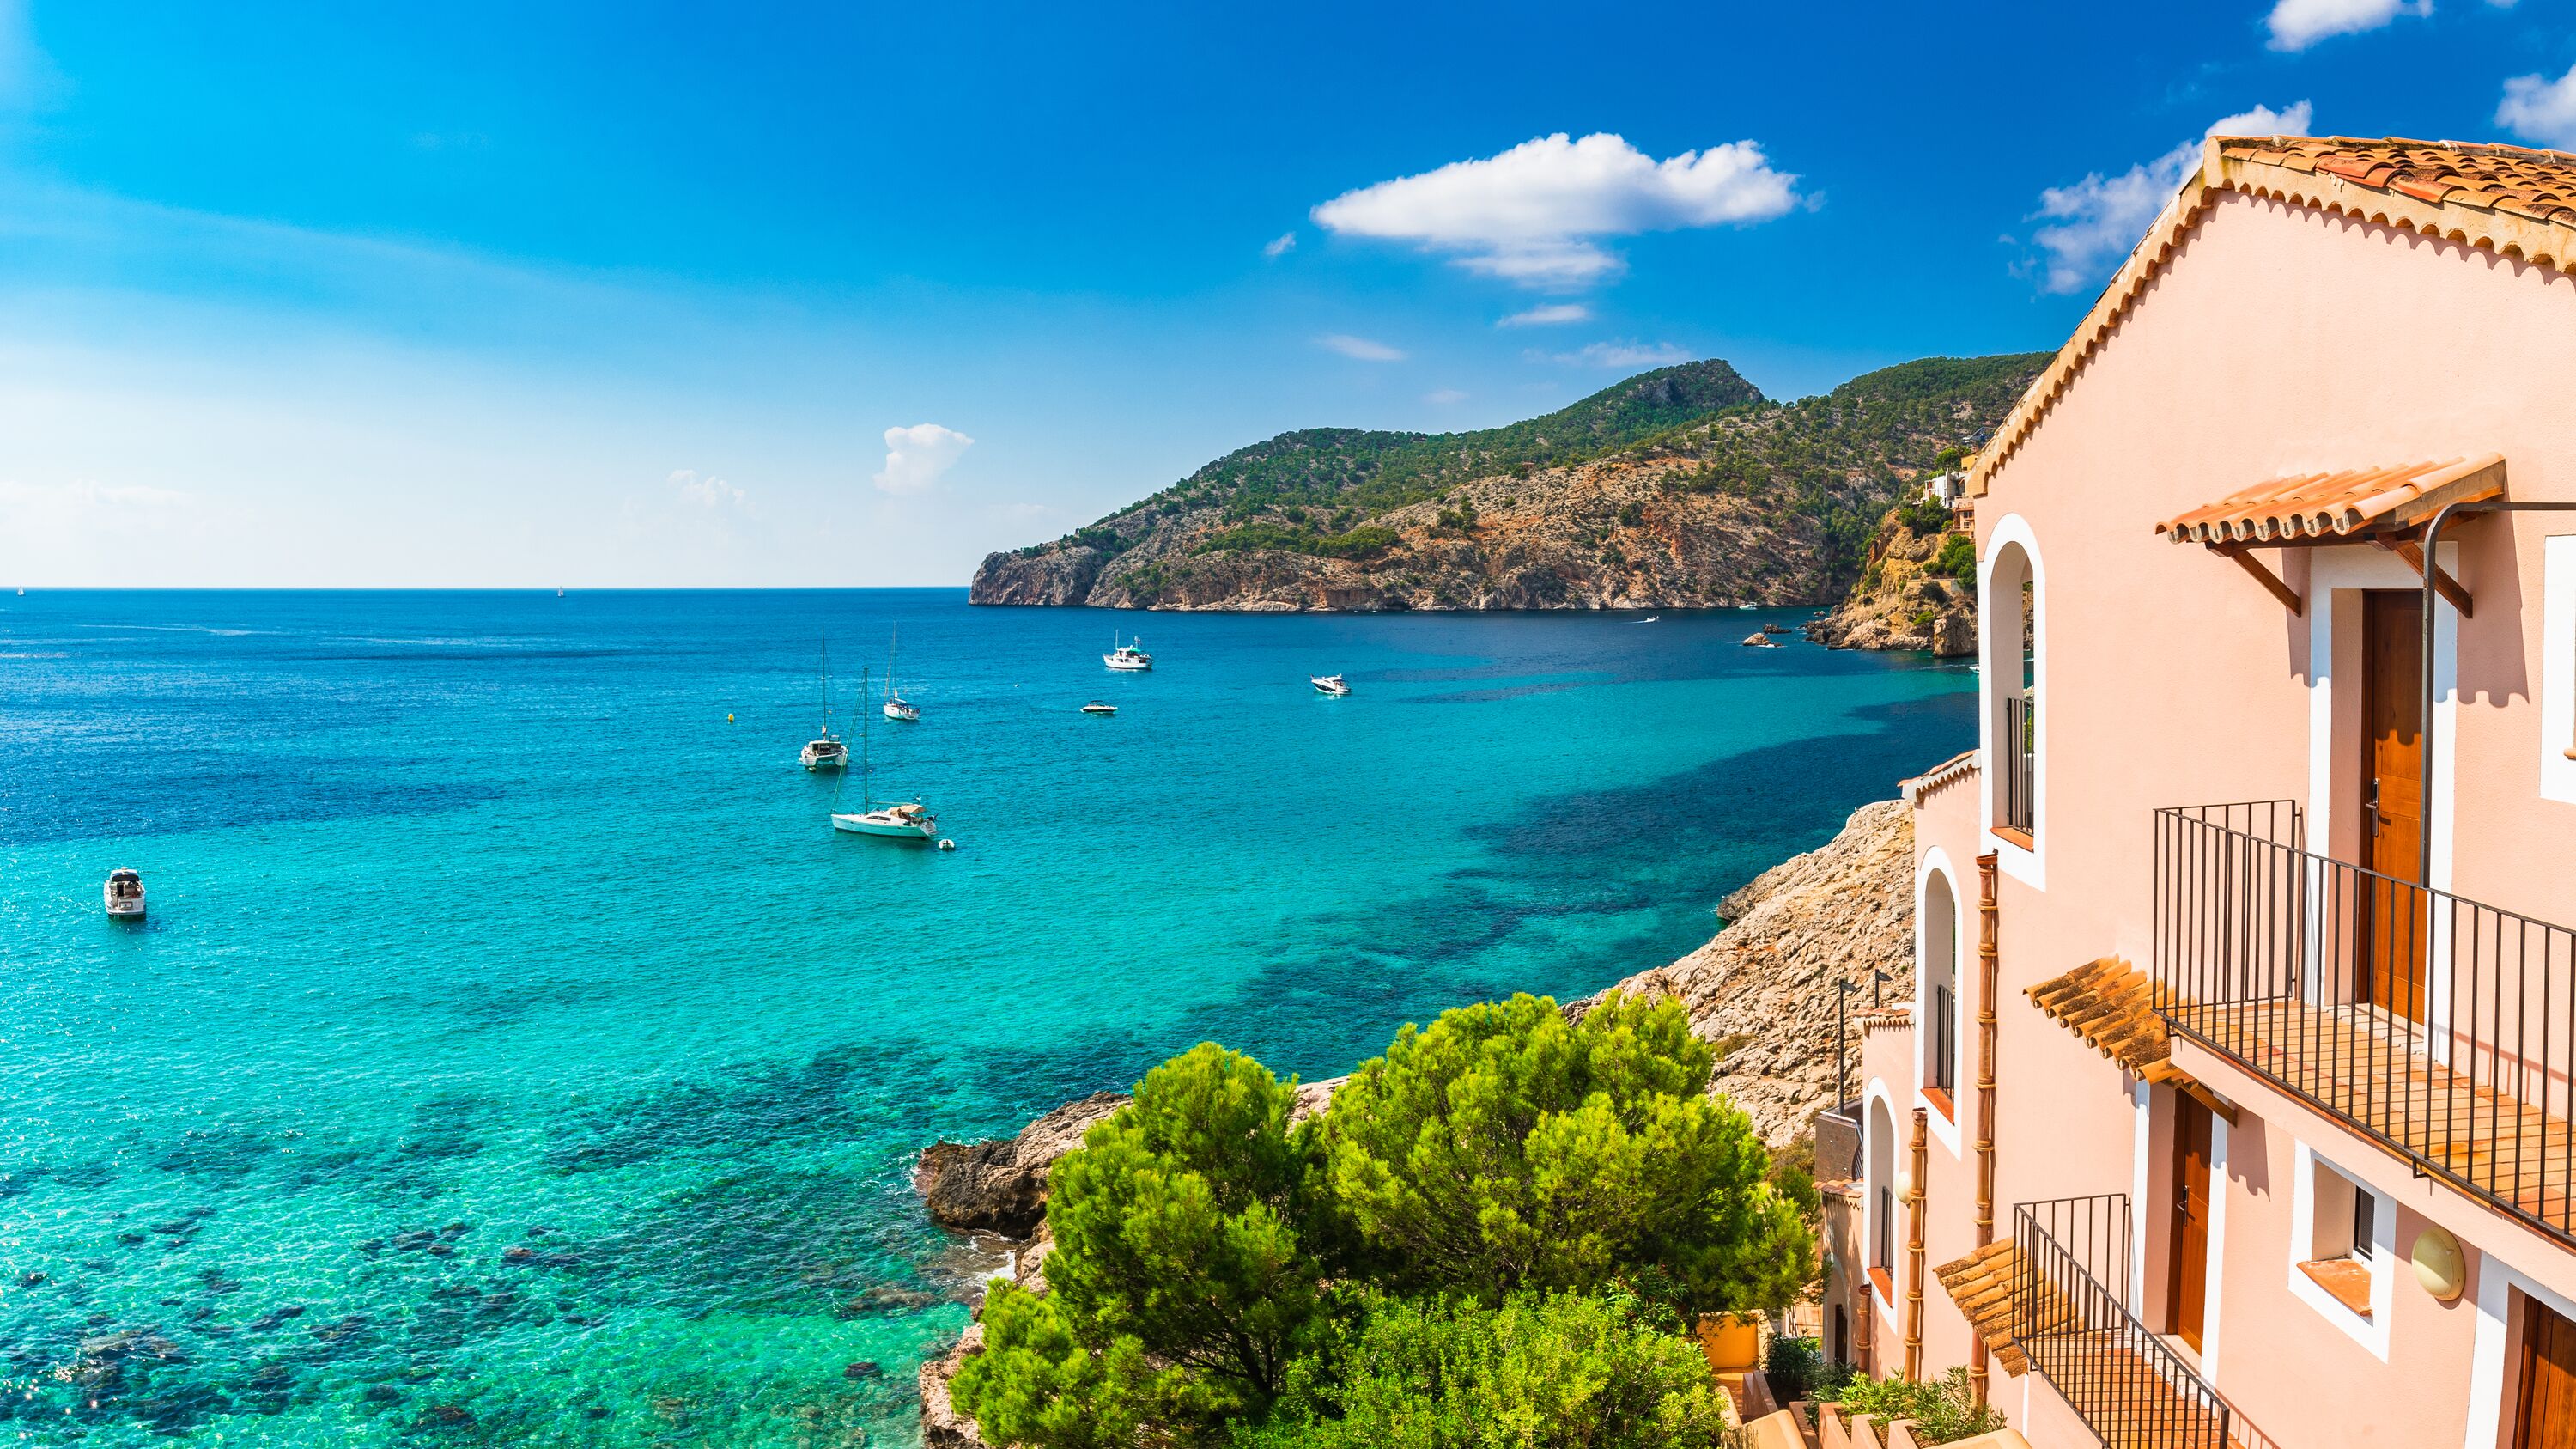  Vakantiehuizen Spanje Direct Aan Zee - Vanaf 294 € P.p.w  thumbnail